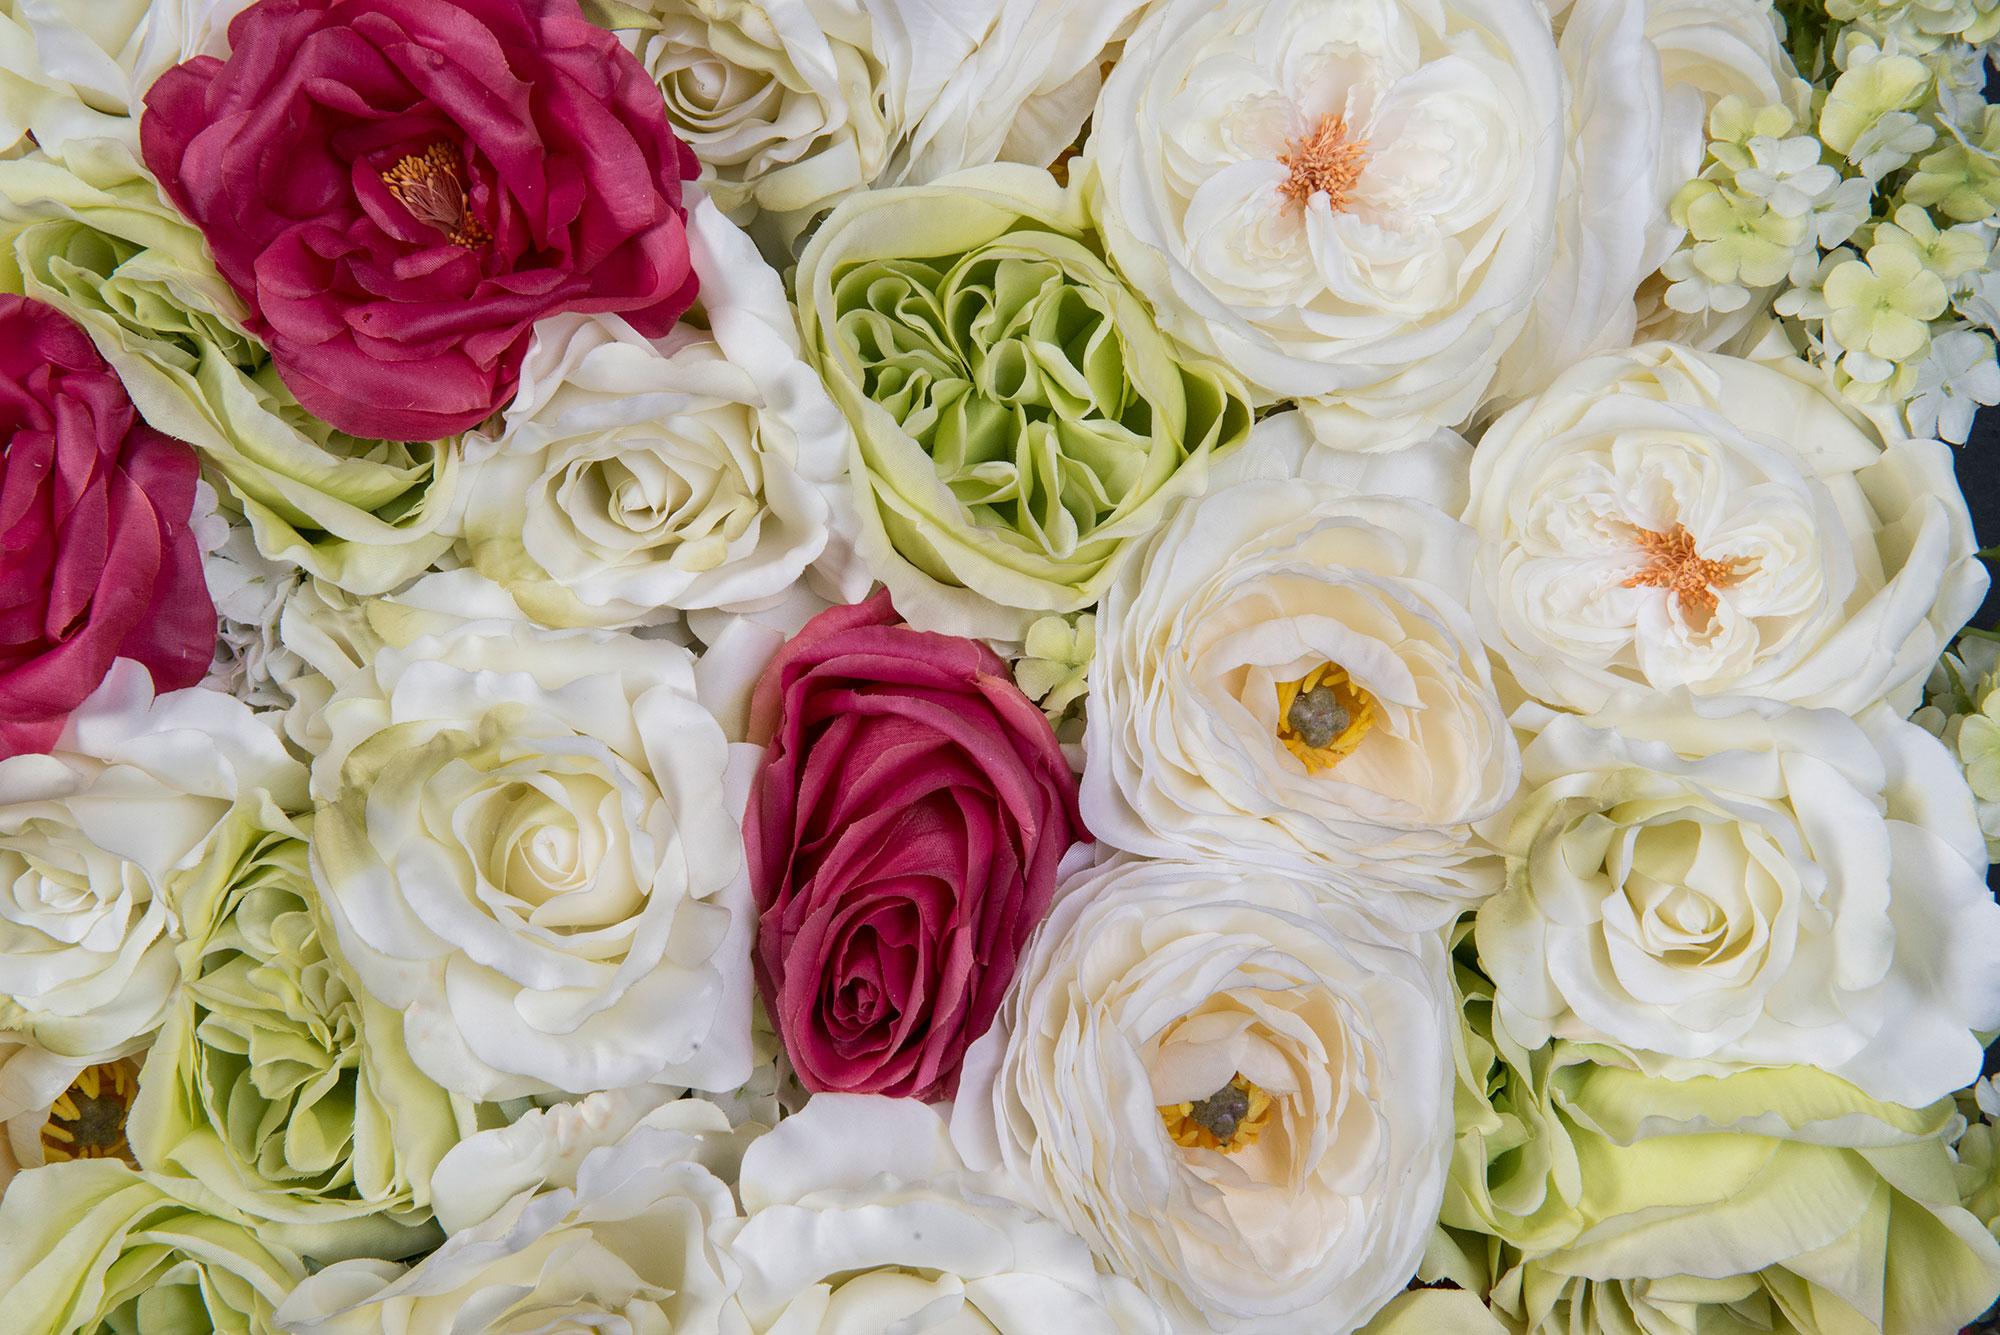 Les murs de fleurs sont une tendance de luxe et une icône de préciosité.
Nos designers floraux sélectionnent chaque pièce avec soin et les montent à la main, en suivant la demande du client.

Informations techniques :
Panneau modulaire cm 100 x